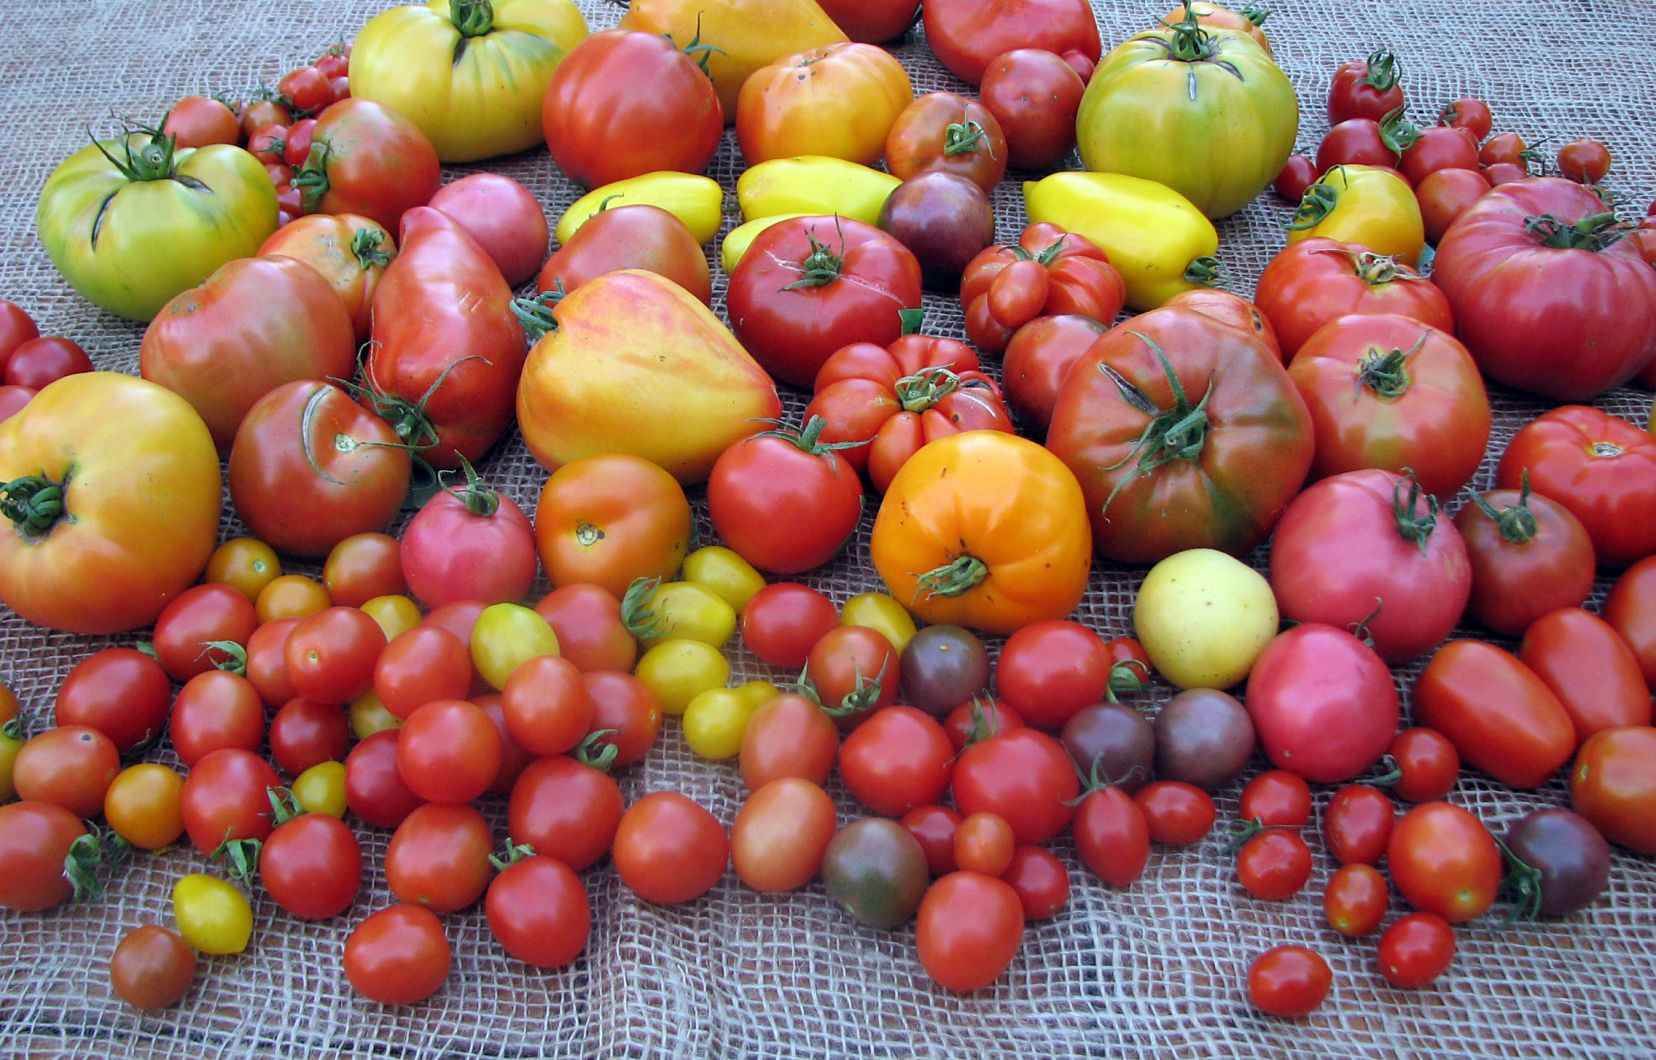 La série MANGER: 4 émissions portant sur la tomate, l’arachide, le maïs et le piment